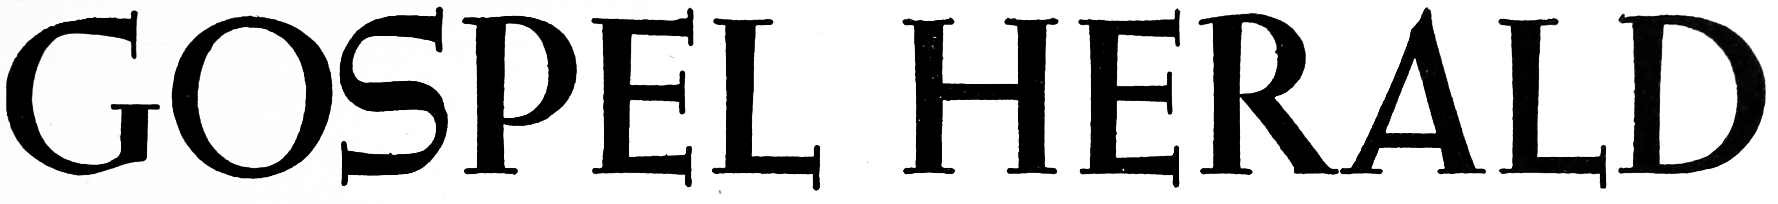 “Gospel Herald” logo, circa 1946